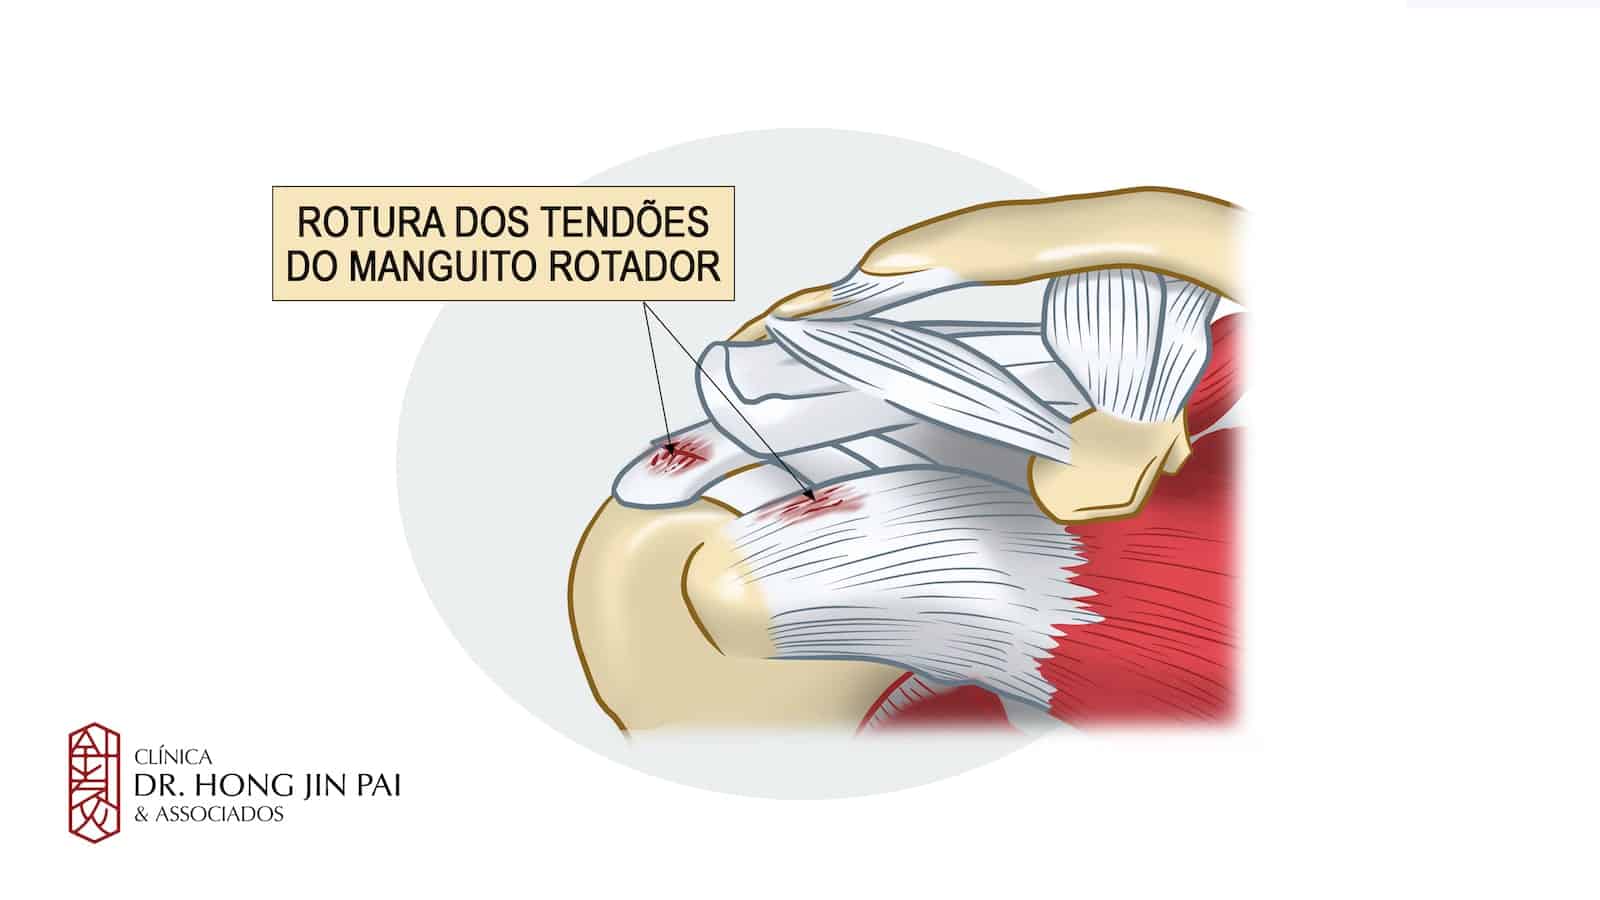 Rotura dos tendoes do manguito